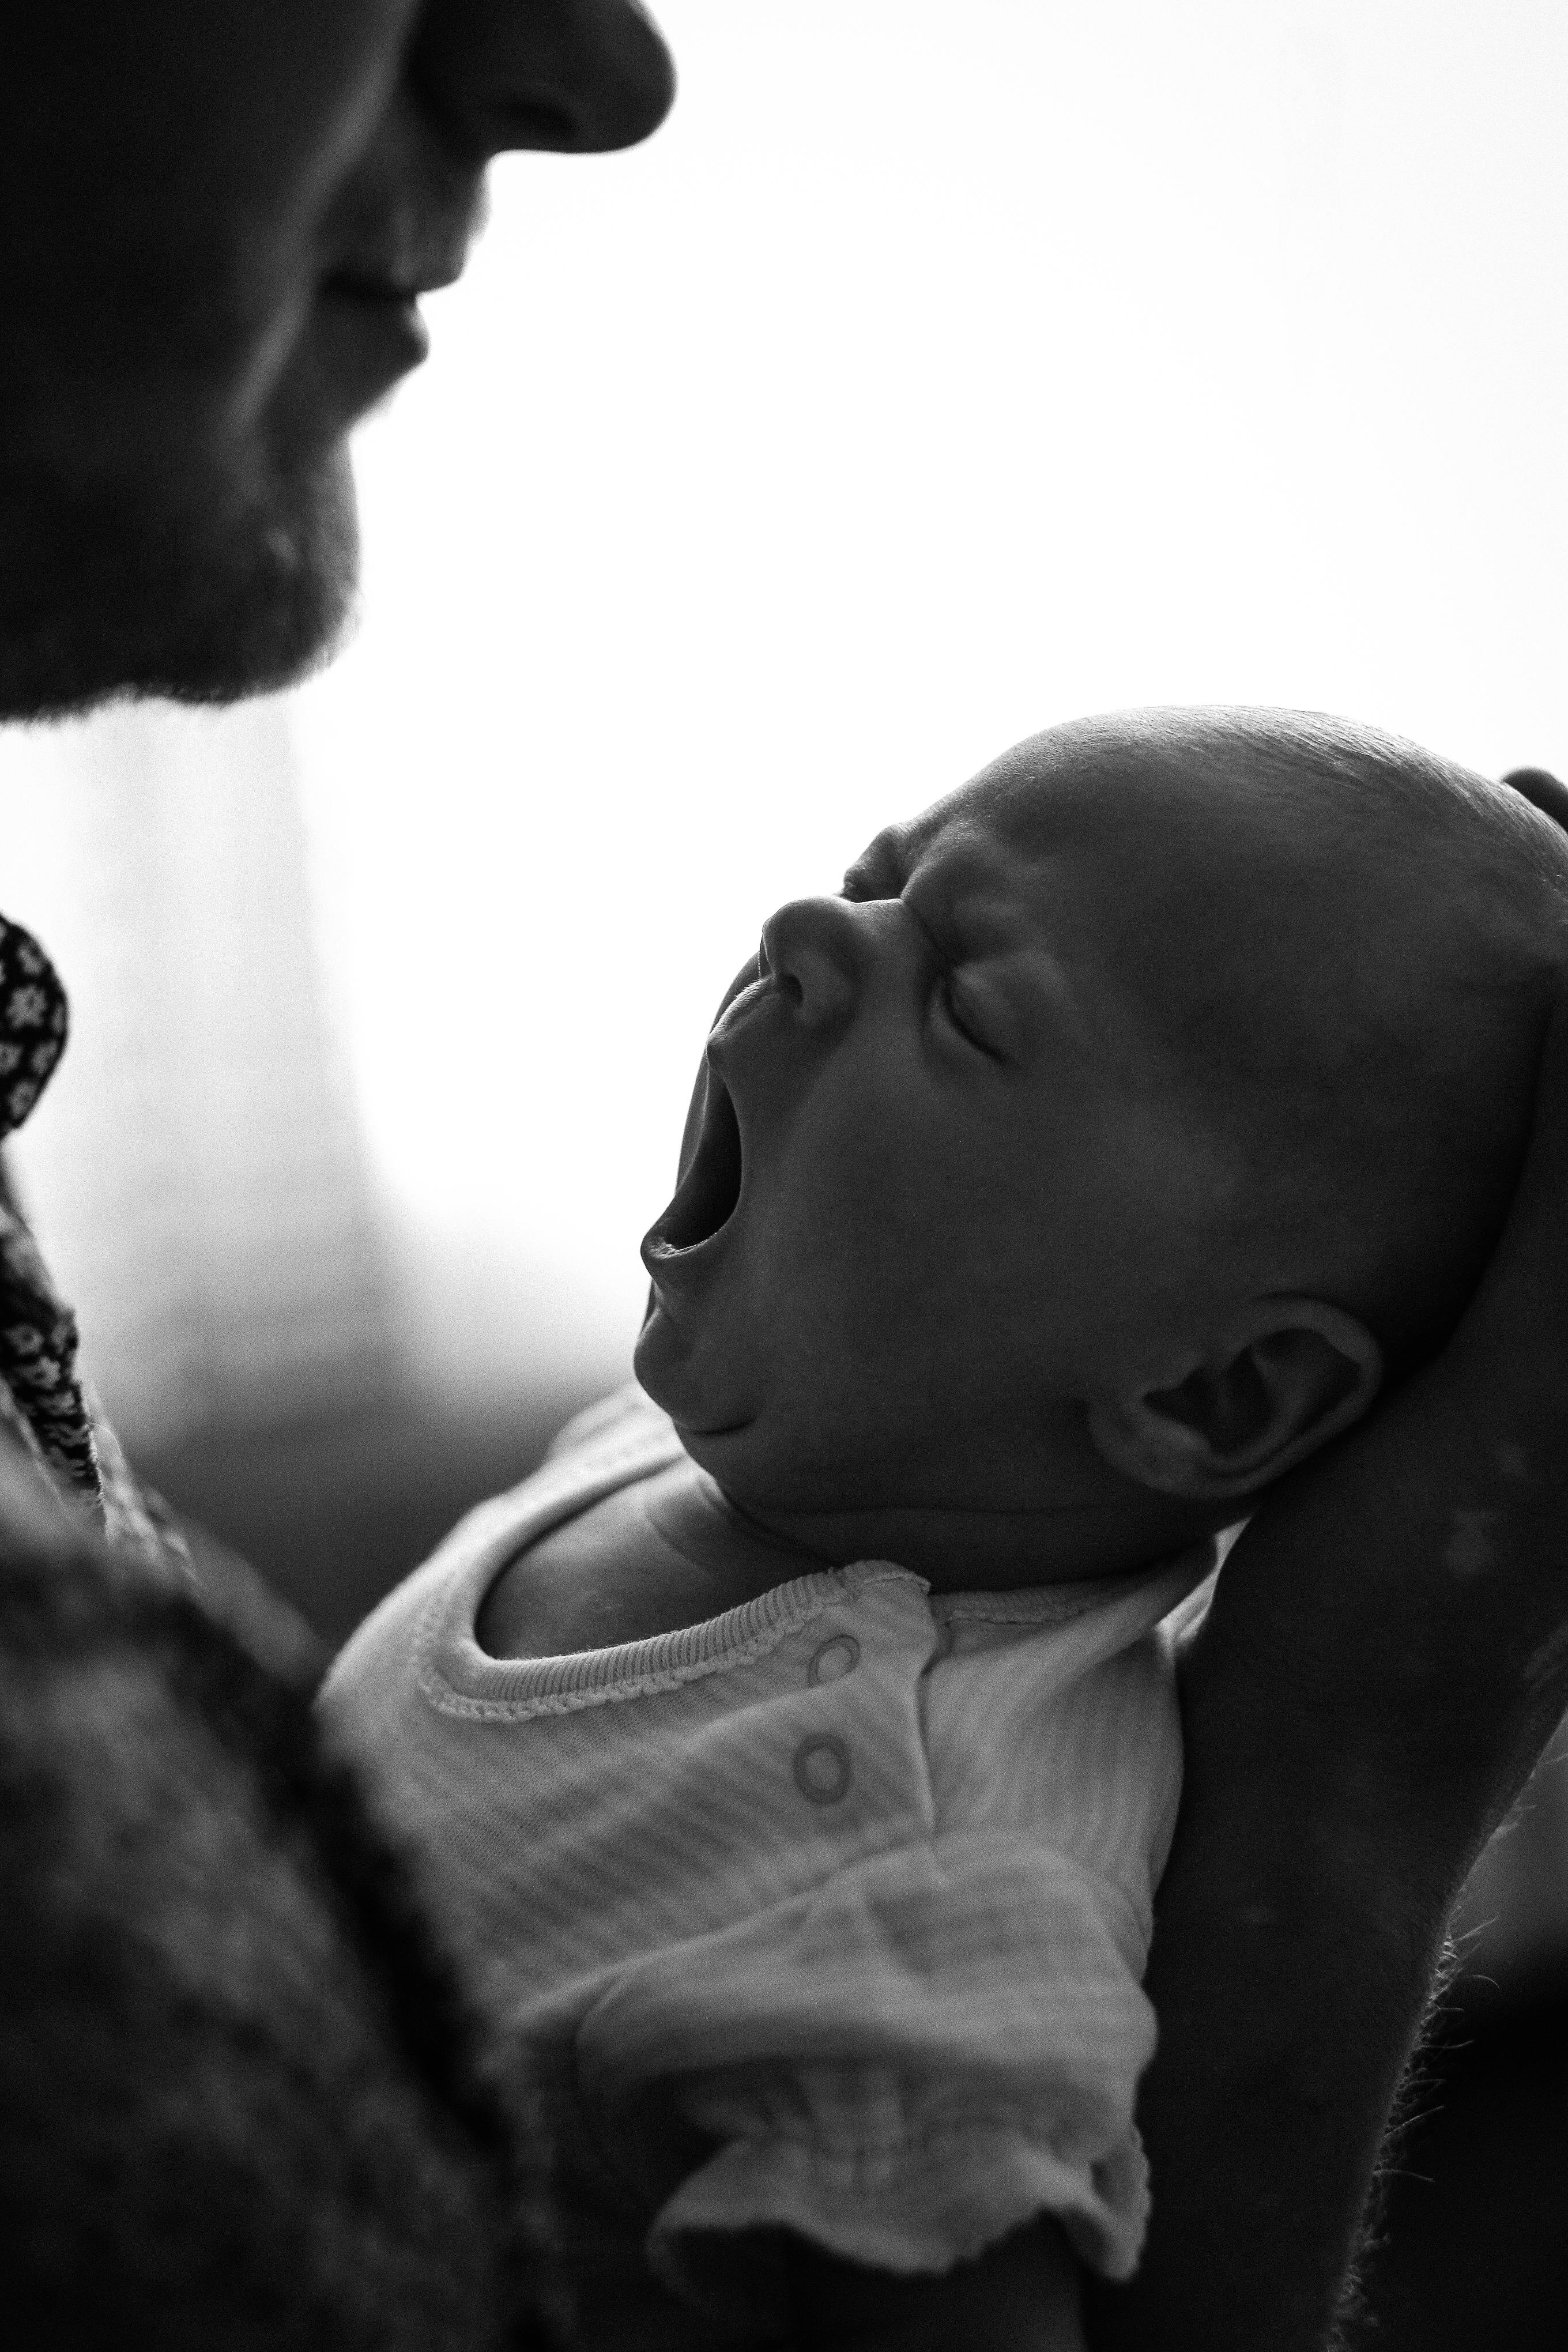 Mann hält ein Baby. Nur zu Illustrationszwecken | Quelle: Pexels